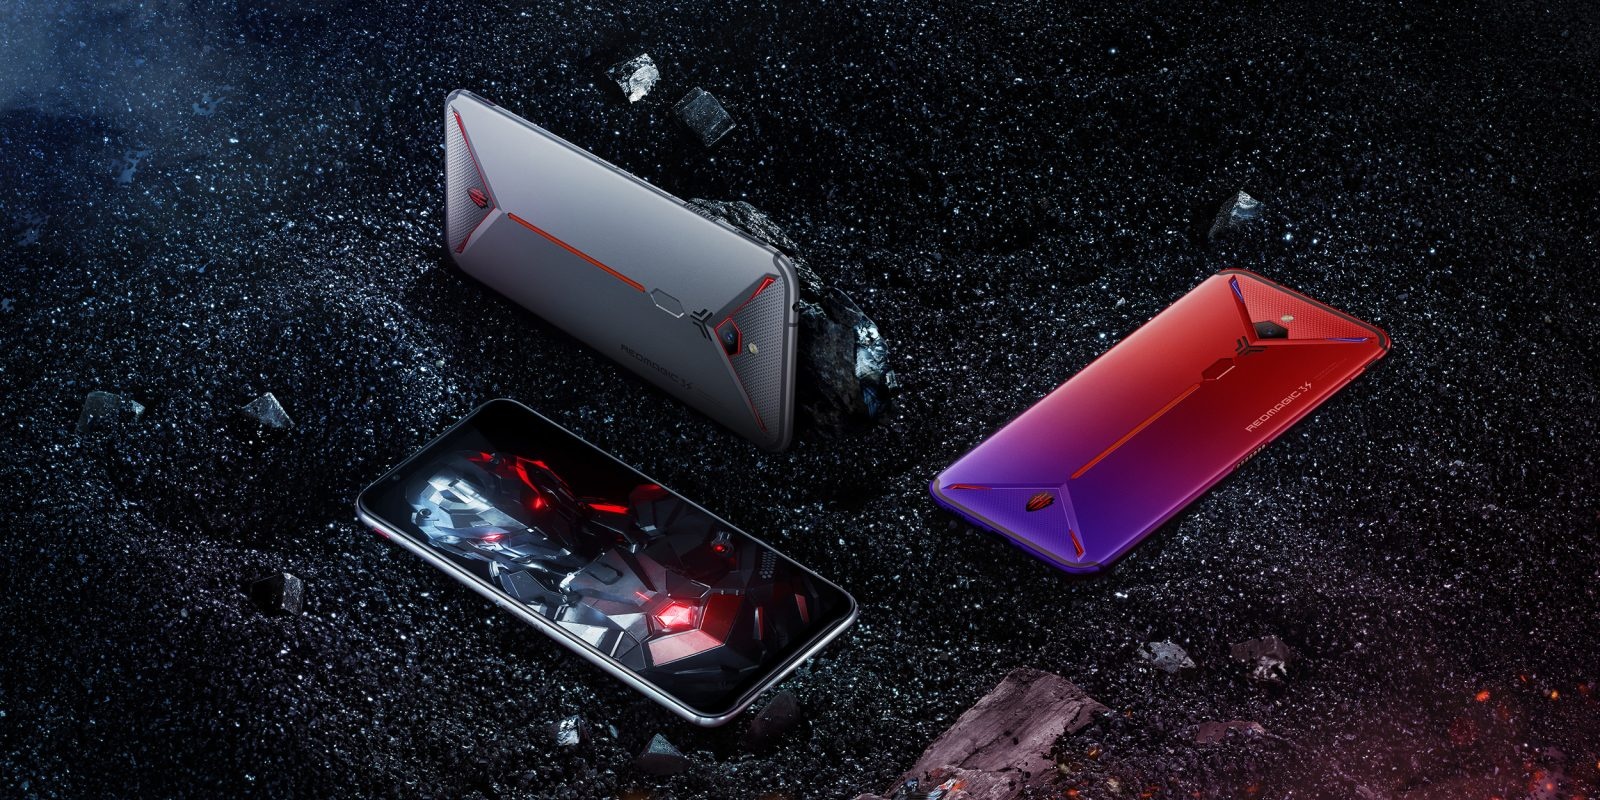 Игровой смартфон Red Magic 3S выйдет на мировой рынок 16 октября